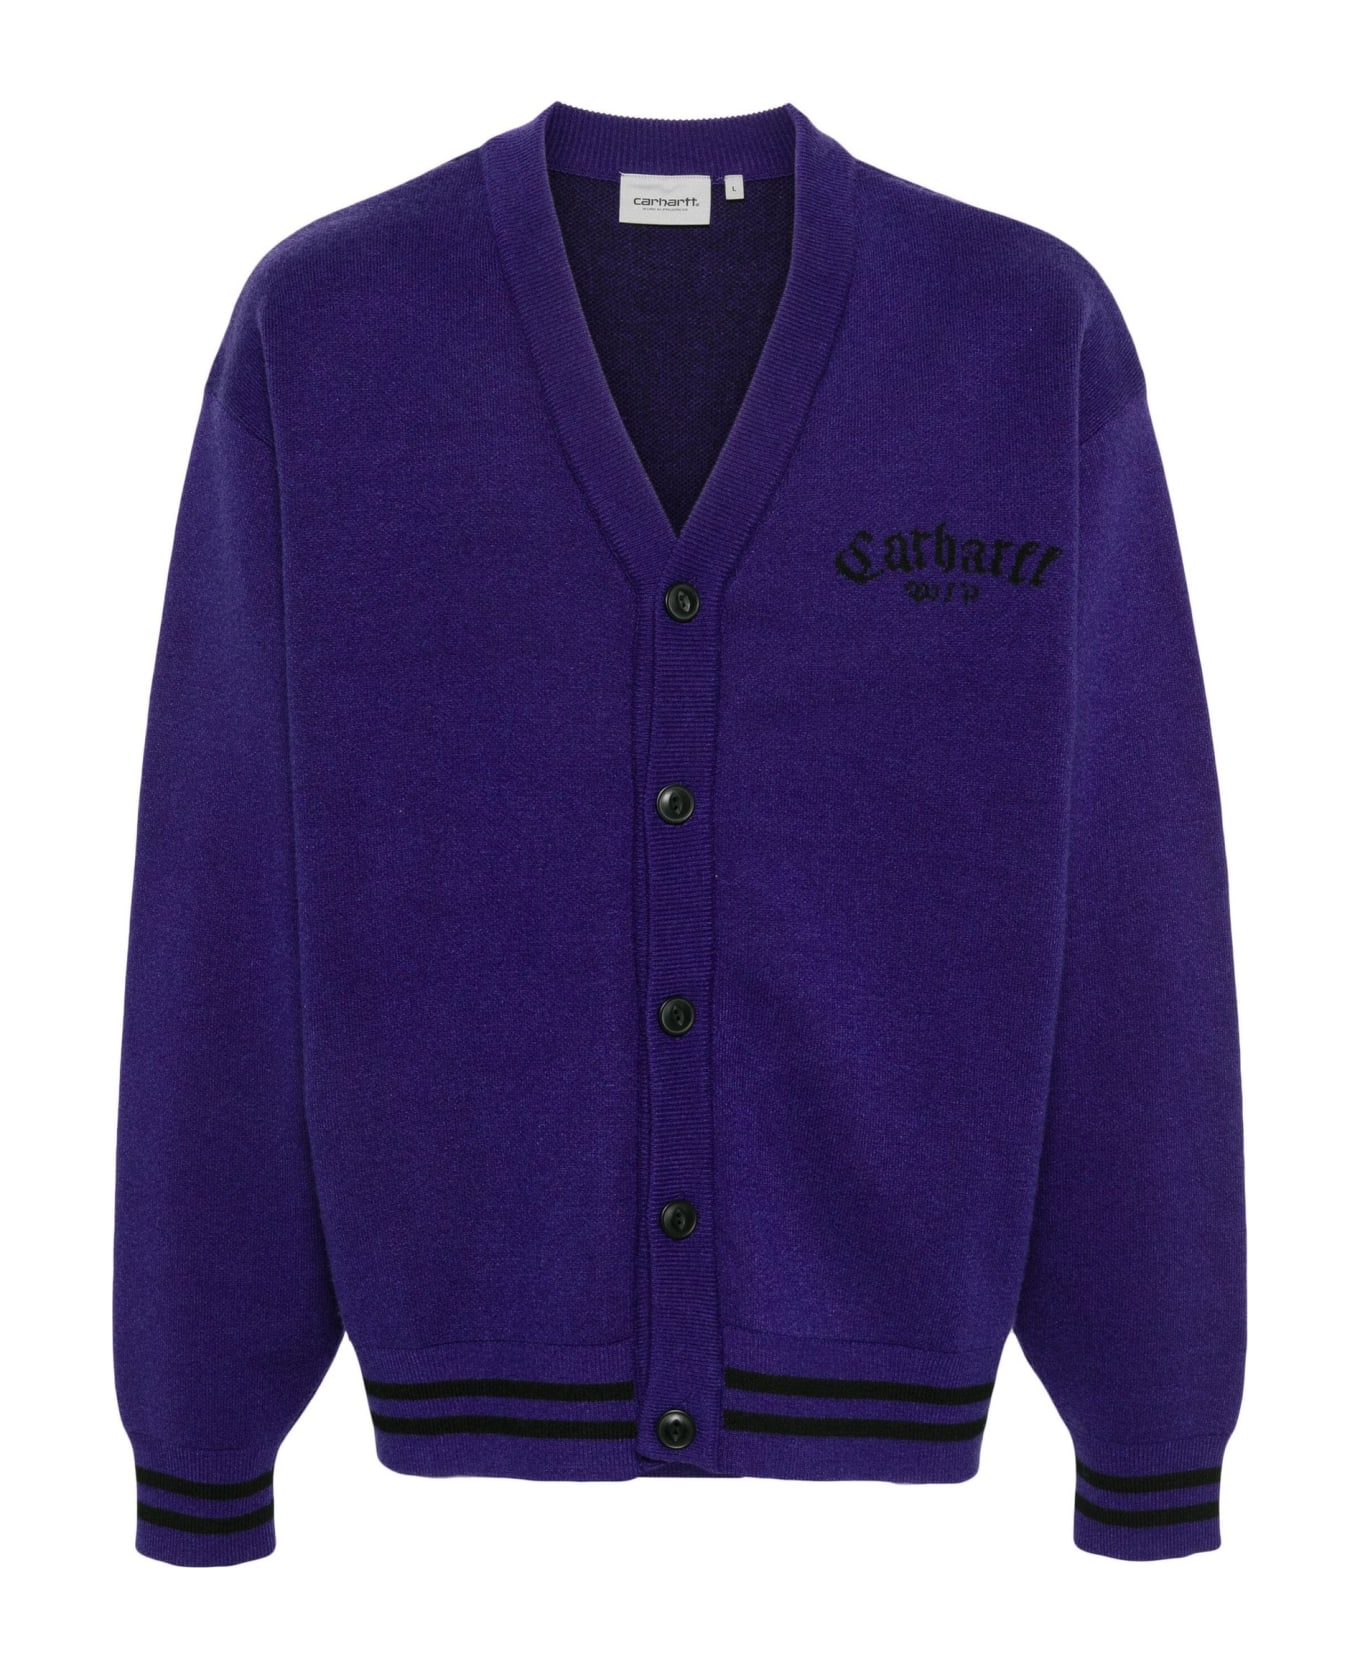 Carhartt Sweaters - Purple